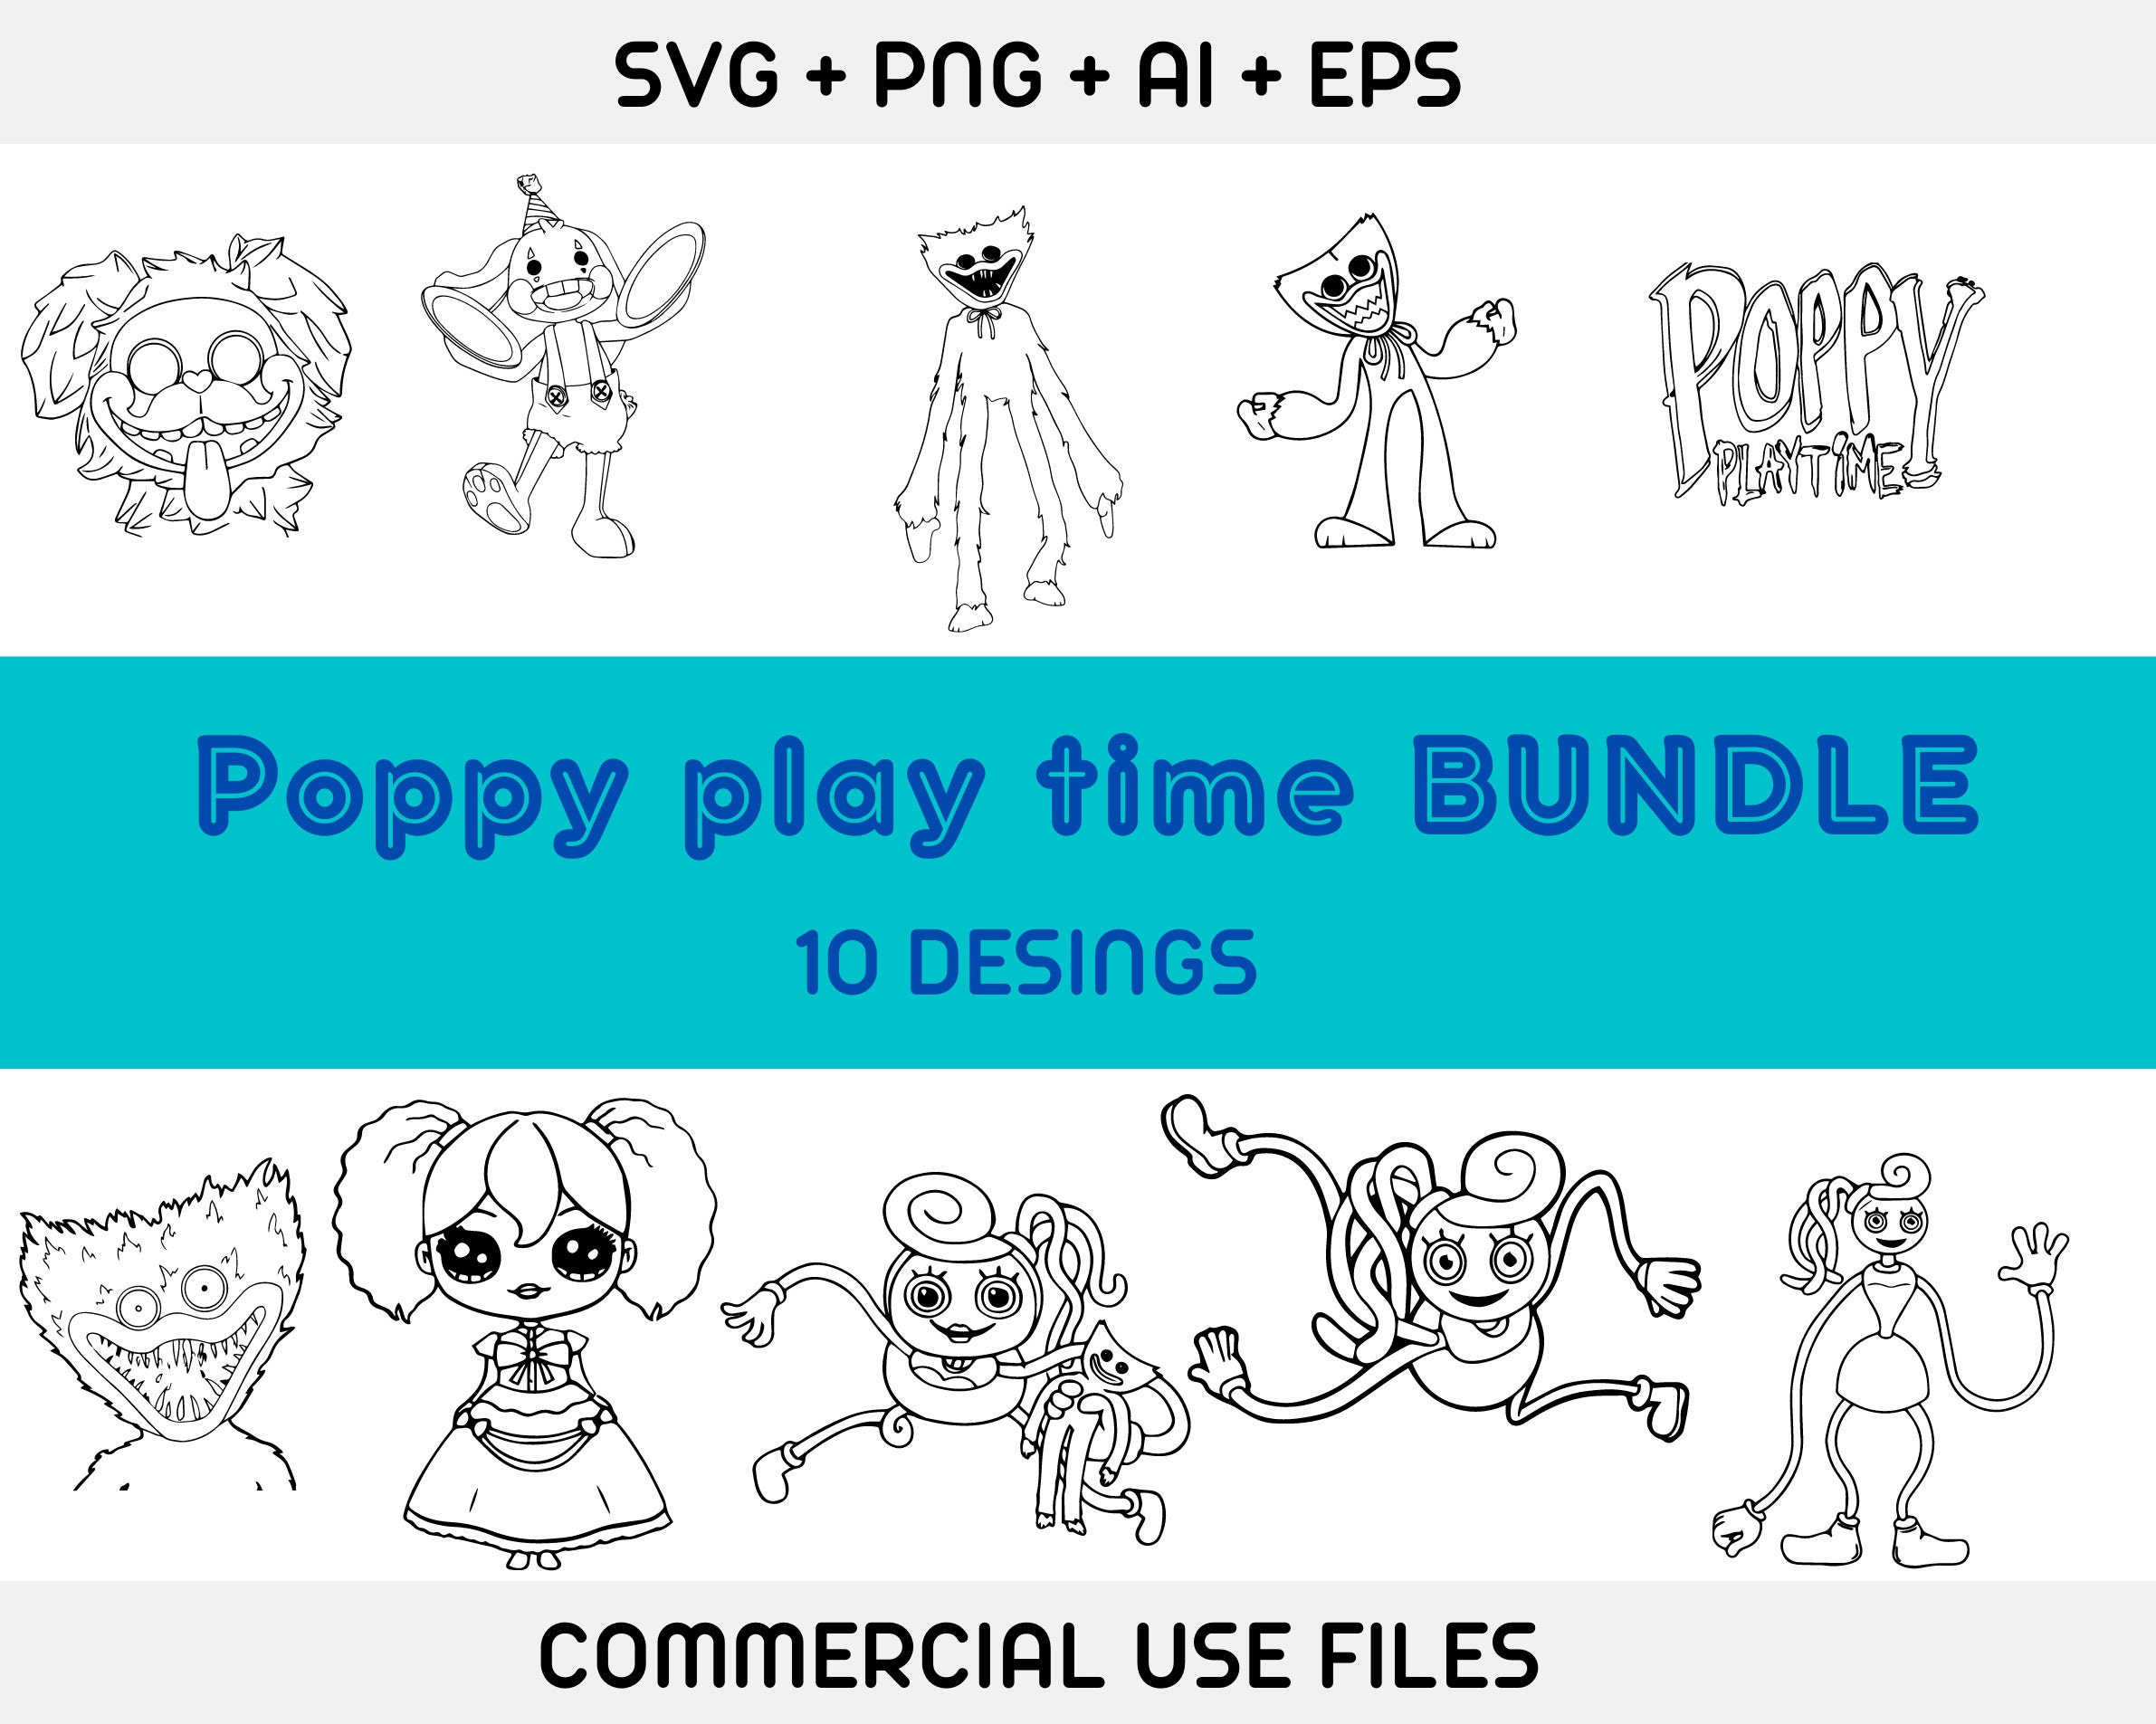 Happy Poppy Playtime Chapter 2 anniversary. : r/PoppyPlaytime